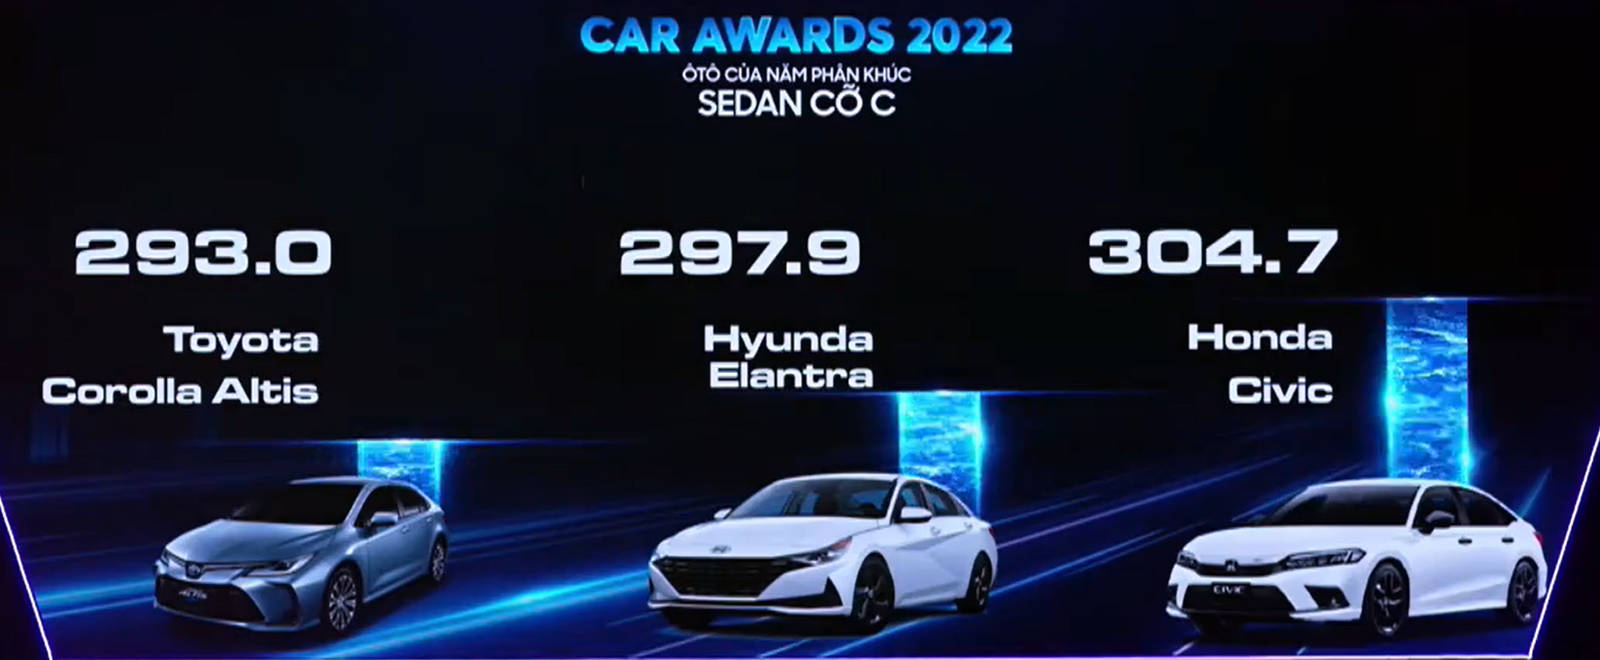 car-awards2022-01.jpg